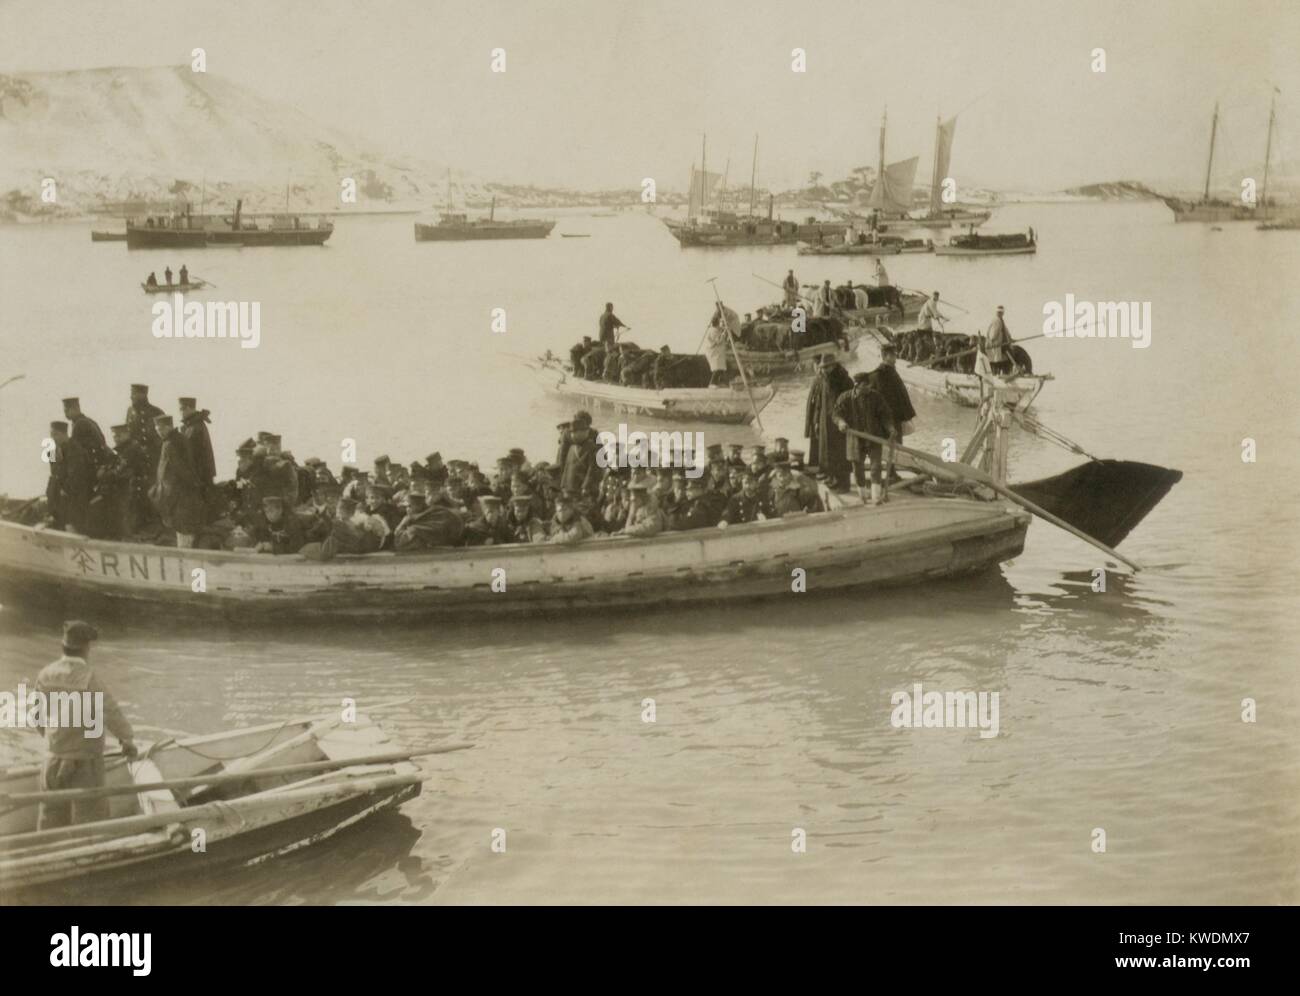 Les bateaux japonais, l'atterrissage approche Chemulpo (Seoul), Corée. Après l'attaque surprise du 9 février 1904, 2 500 soldats japonais, débarqués et déplacé d'occuper Séoul, Corée, au début de la guerre russo-japonaise (BSLOC   2017 18 94) Banque D'Images